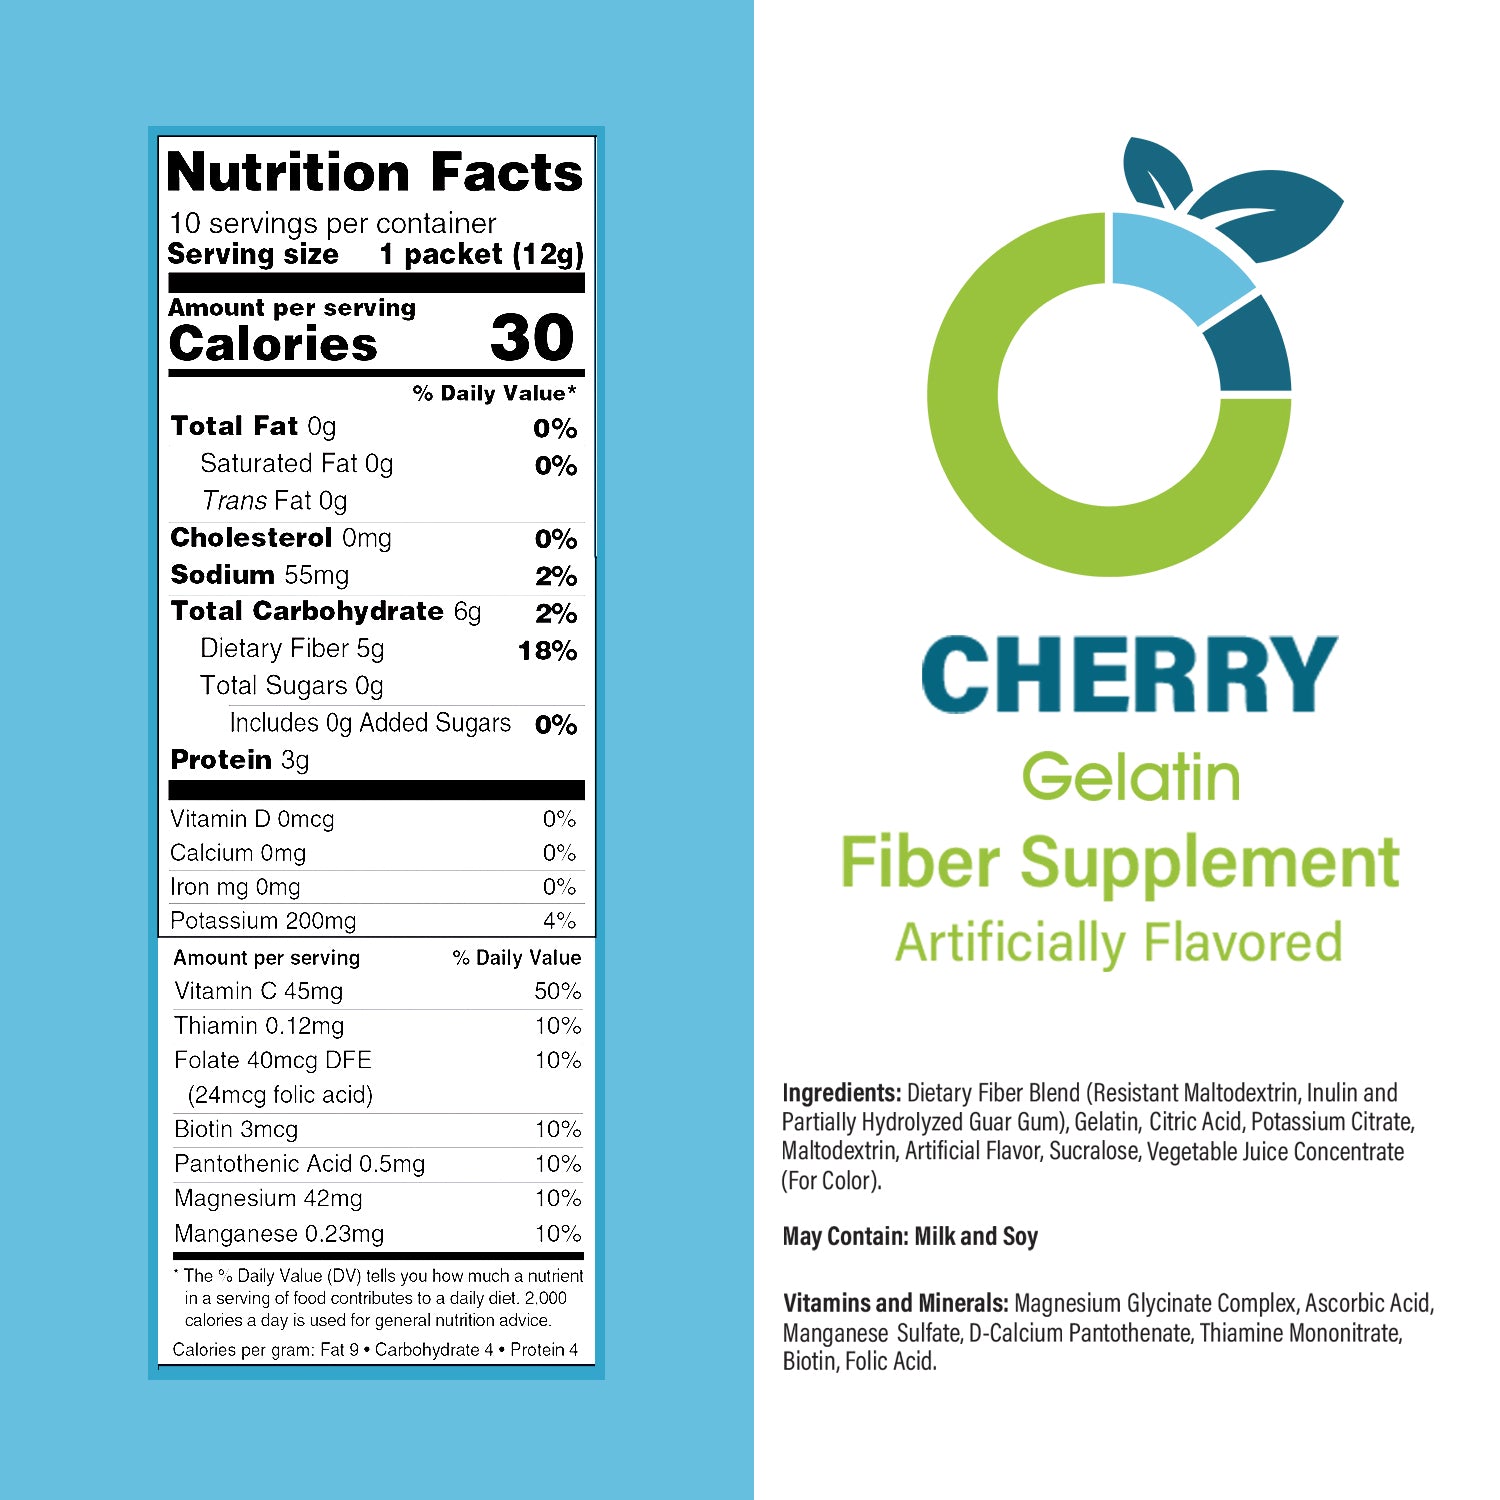 Cherry Gelatin Fiber Supplement